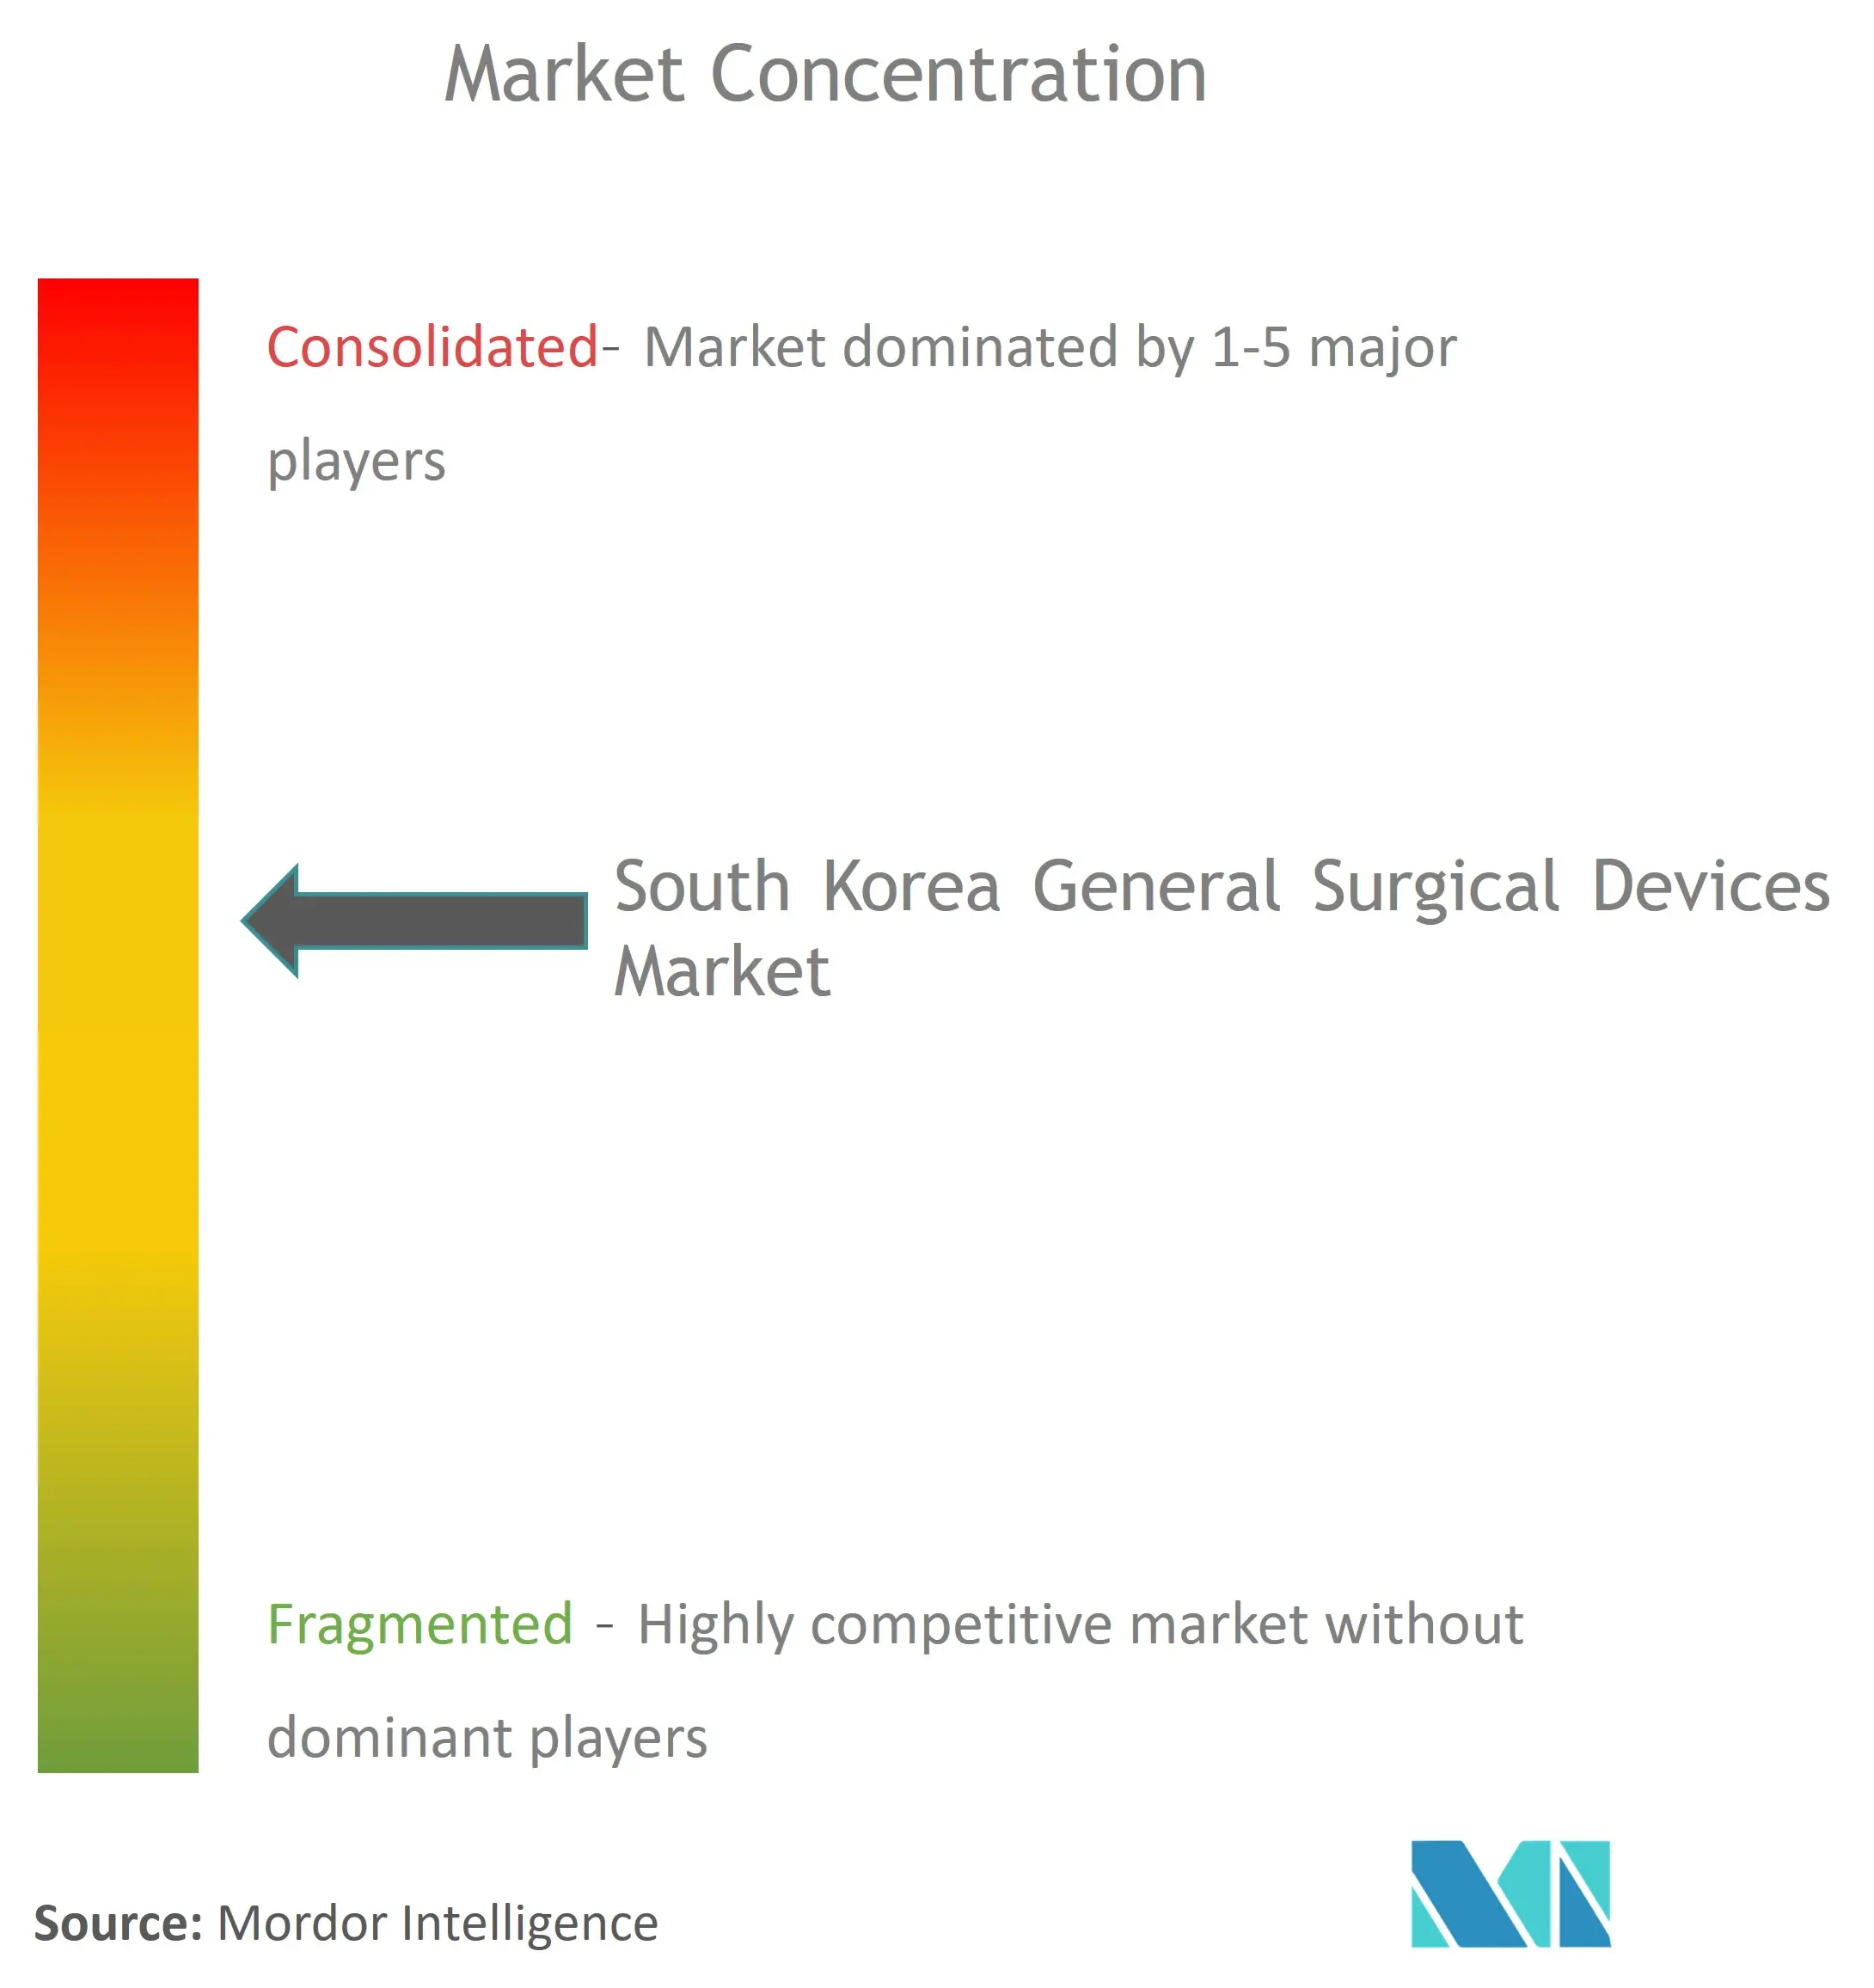 Concentración del mercado de dispositivos quirúrgicos generales de Corea del Sur.png